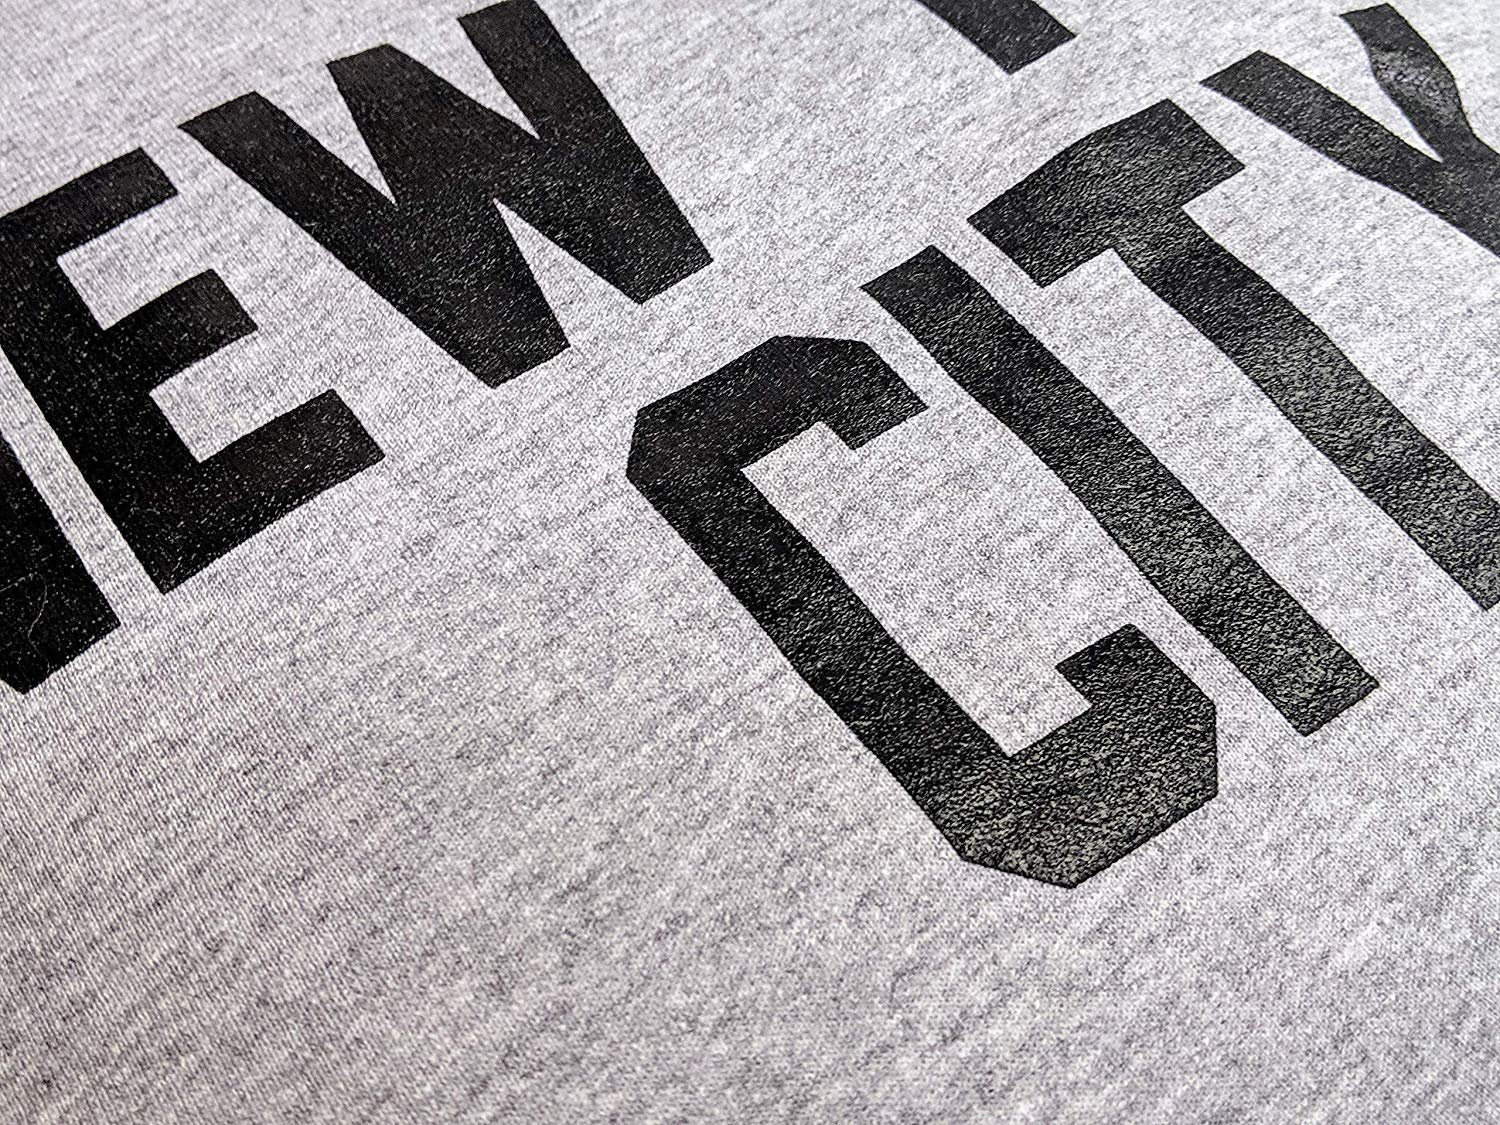 New York City Rundhals-Sweatshirt Siebdruck Lennon Heather Grey